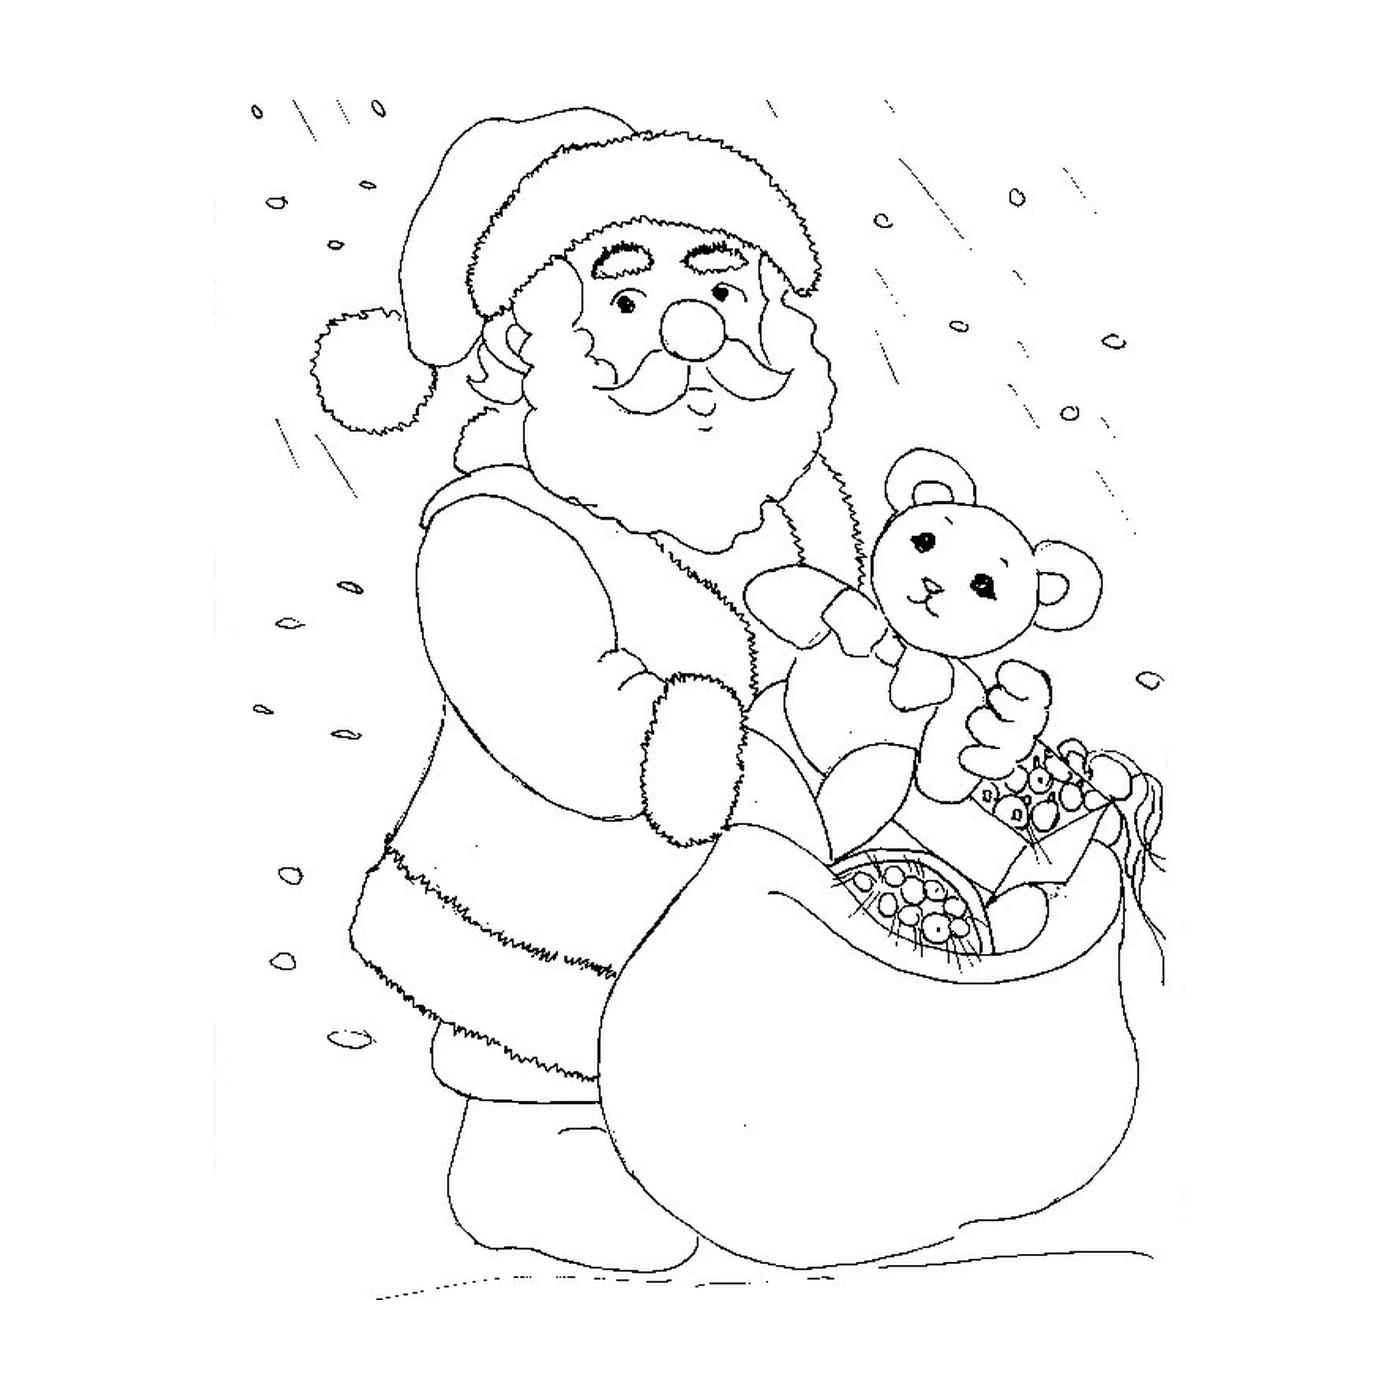  Santa holding a teddy bear 